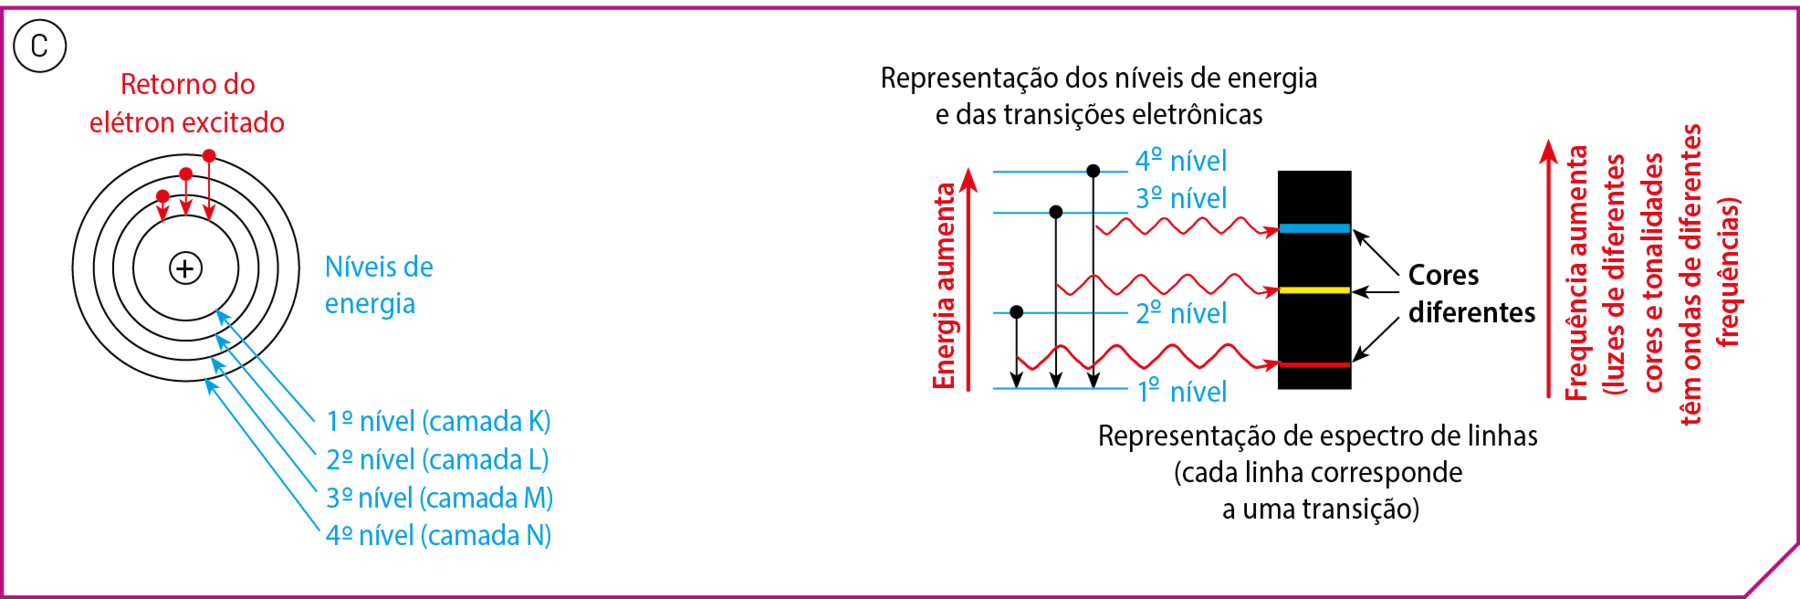 Esquema C. Sinal de positivo no centro de quatro círculos concêntricos. Cada um representa um nível de energia. De dentro para fora: 1º nível (camada K); 2º nível (camada L); 3º nível (camada M); 4º nível (camada N). Cada uma das 3 camadas exteriores tem um ponto vermelho com uma seta para dentro, indicando o retorno do elétron excitado. Esquema. Representação dos níveis de energia e das transições eletrônicas. Faixa preta vertical com três linhas coloridas, de cima para baixo: uma azul, uma amarela e uma vermelha. Texto: Cores diferentes. Texto: Representação de espectro de linhas (cada linha corresponde a uma transição). Do lado direito, seta para cima: Frequência aumenta (luzes de diferentes cores e tonalidades têm ondas de diferentes frequências).  À esquerda, há quatro linhas horizontais representando os 4 níveis de energia. No segundo, no terceiro e no quarto tem uma bolinha preta com uma seta até o primeiro nível, que está abaixo. Seta do primeiro nível em direção ao quarto nível indica o aumento de energia.